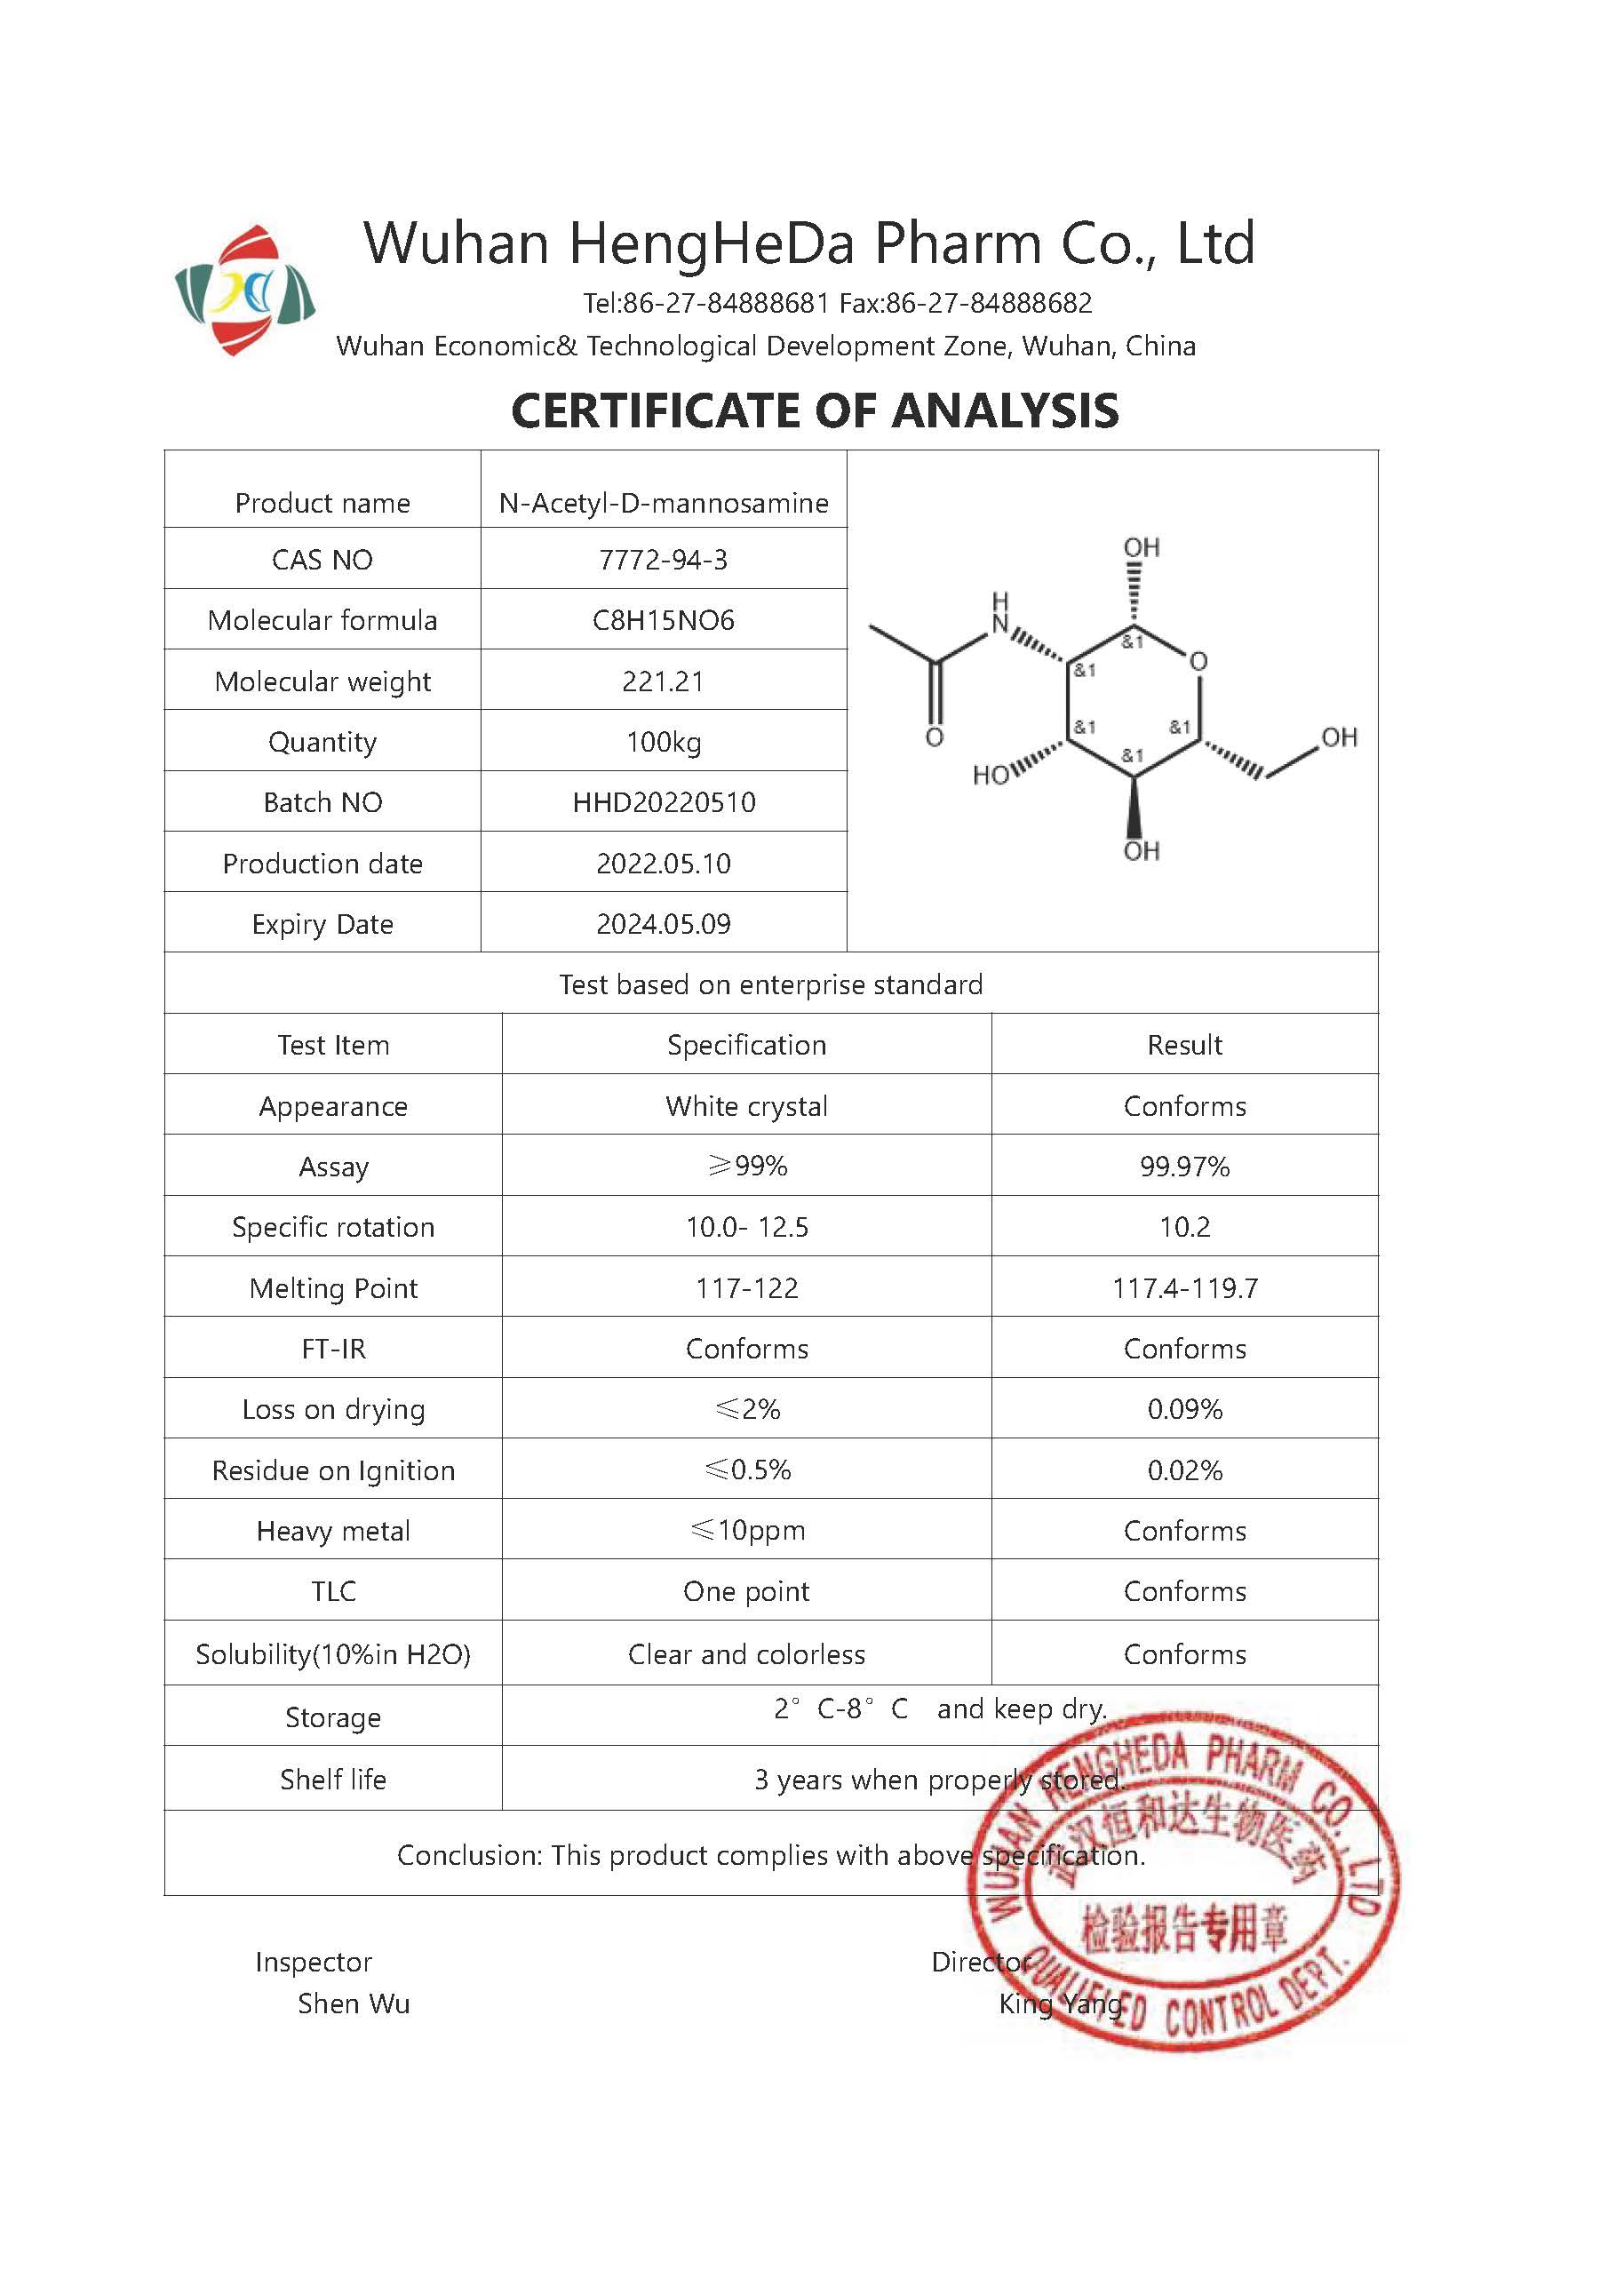 Kaufen N-Acetyl-D-mannosamin CAS 7772-94-3;N-Acetyl-D-mannosamin CAS 7772-94-3 Preis;N-Acetyl-D-mannosamin CAS 7772-94-3 Marken;N-Acetyl-D-mannosamin CAS 7772-94-3 Hersteller;N-Acetyl-D-mannosamin CAS 7772-94-3 Zitat;N-Acetyl-D-mannosamin CAS 7772-94-3 Unternehmen